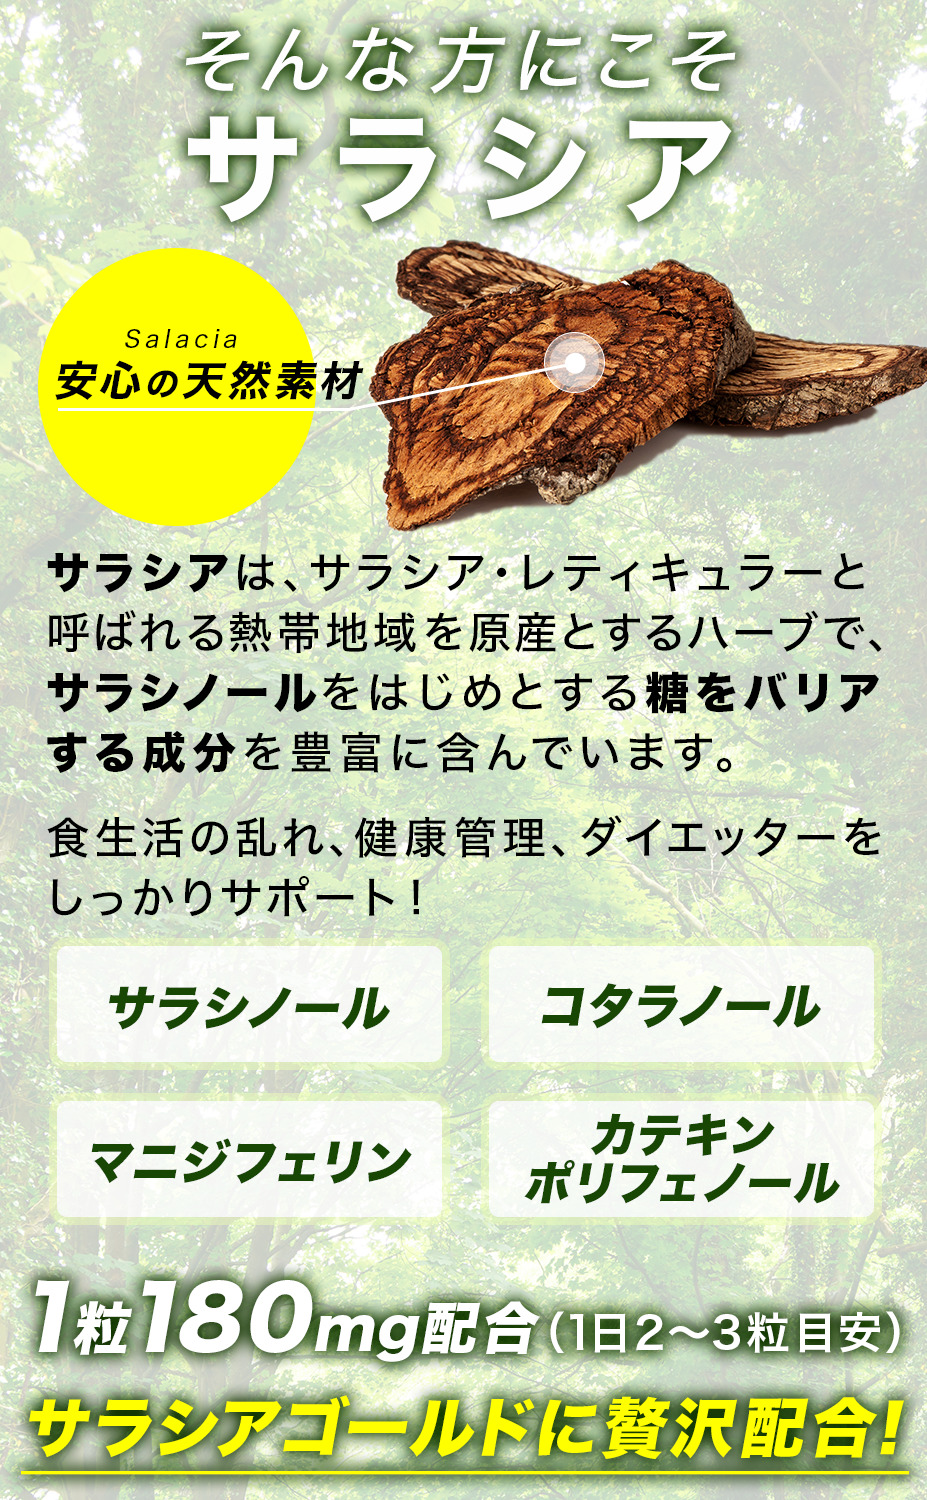 サラシア 10800mg含有 ウコン 菊芋 イヌリン サプリ サラシアゴールド